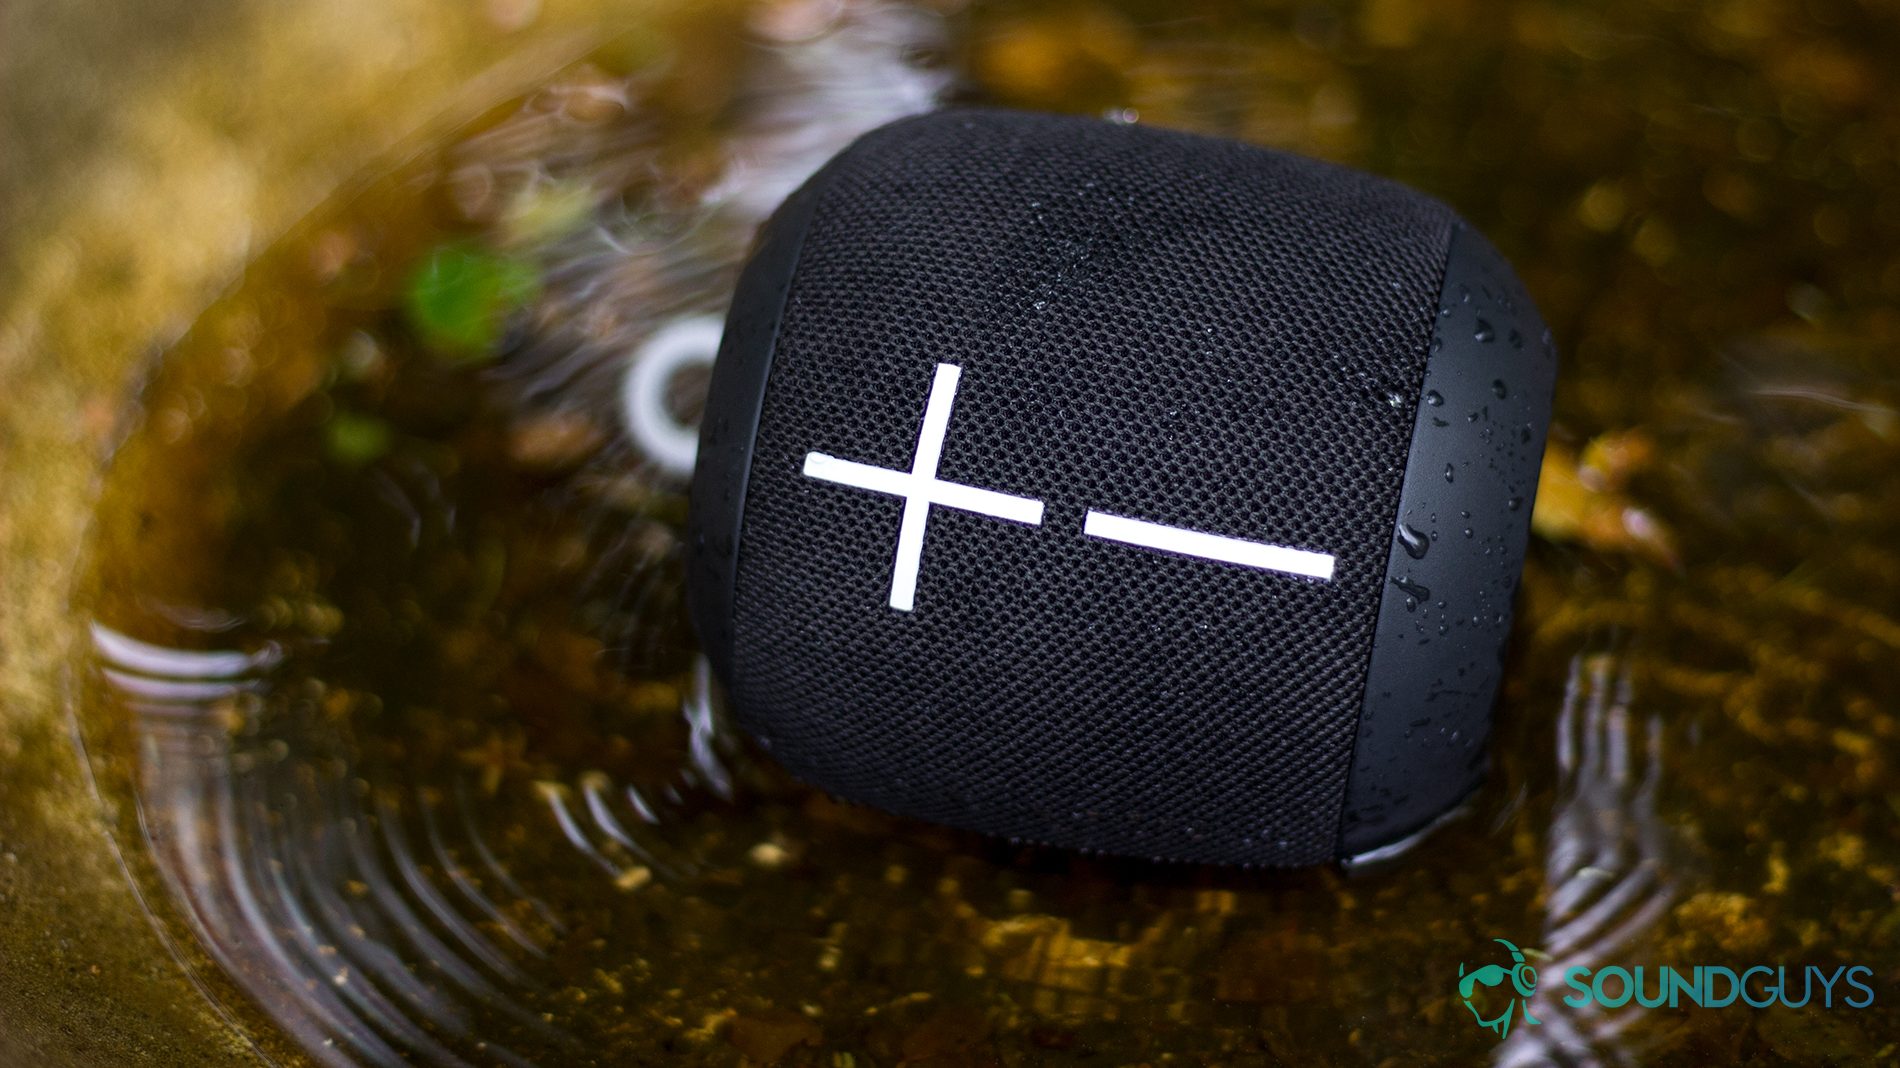 The UE Wonderboom waterproof Bluetooth speaker.